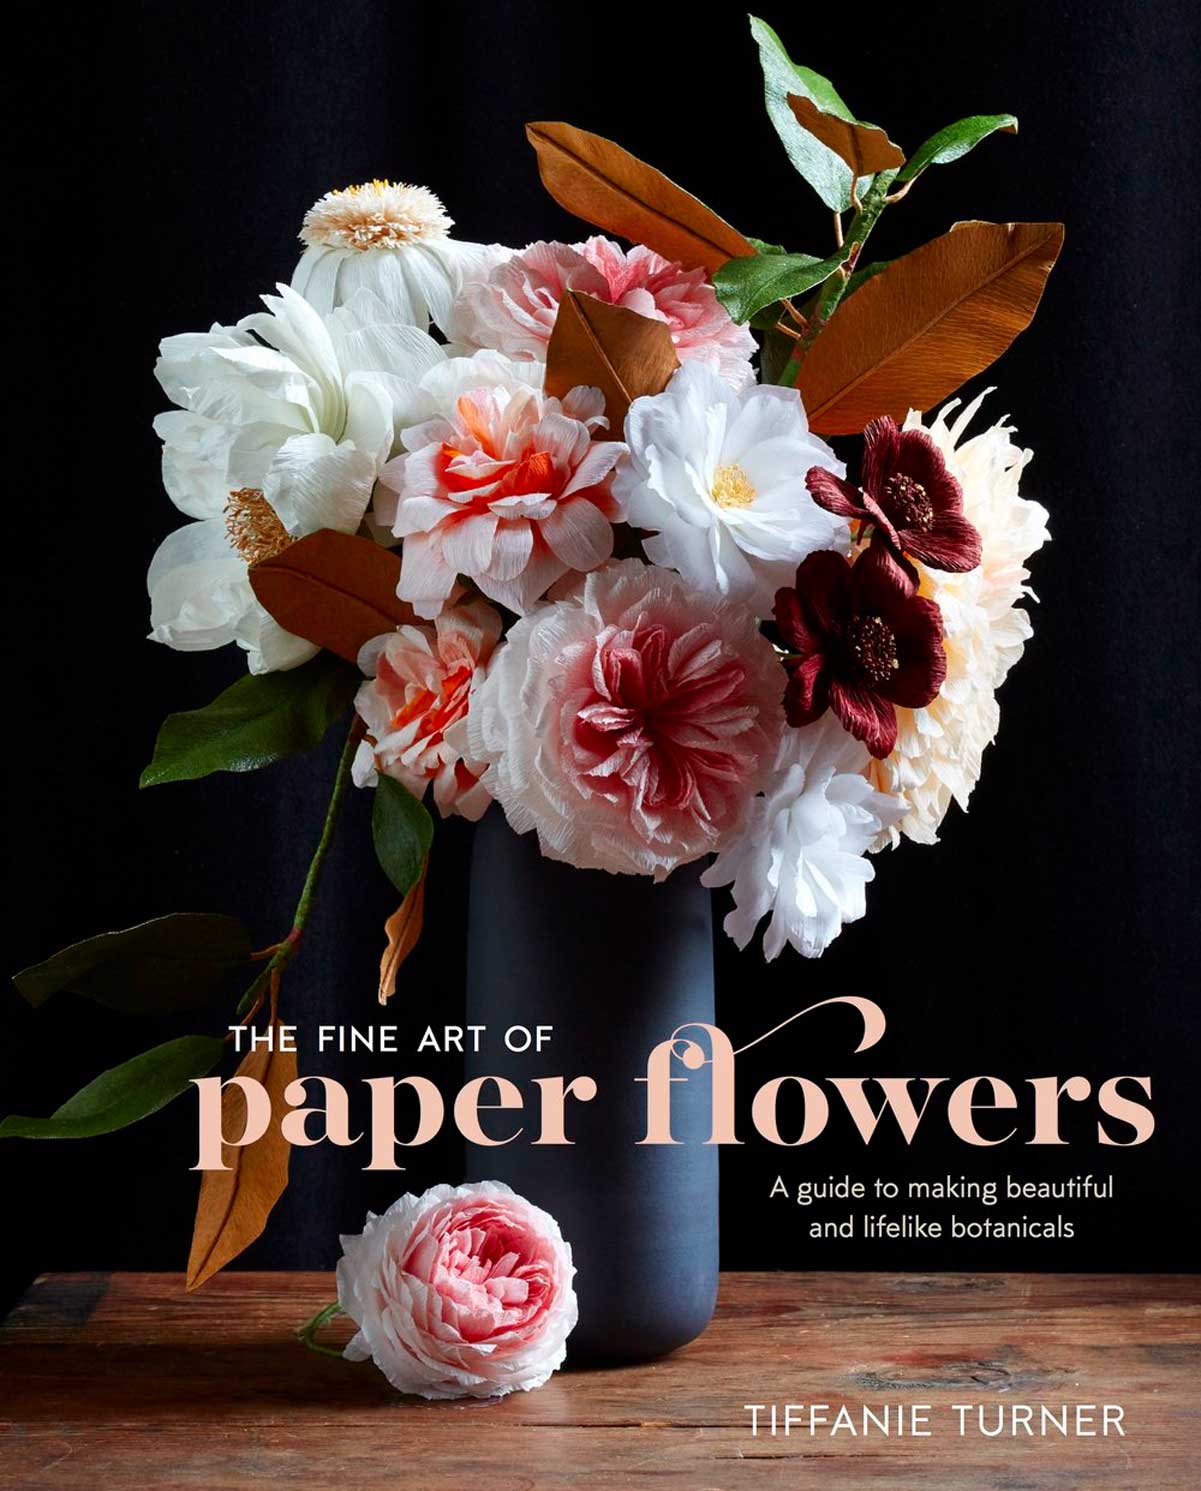 Изготовление цветов из бумаги: практические рекомендации начинающим волшебникам от Тиффани Тернер